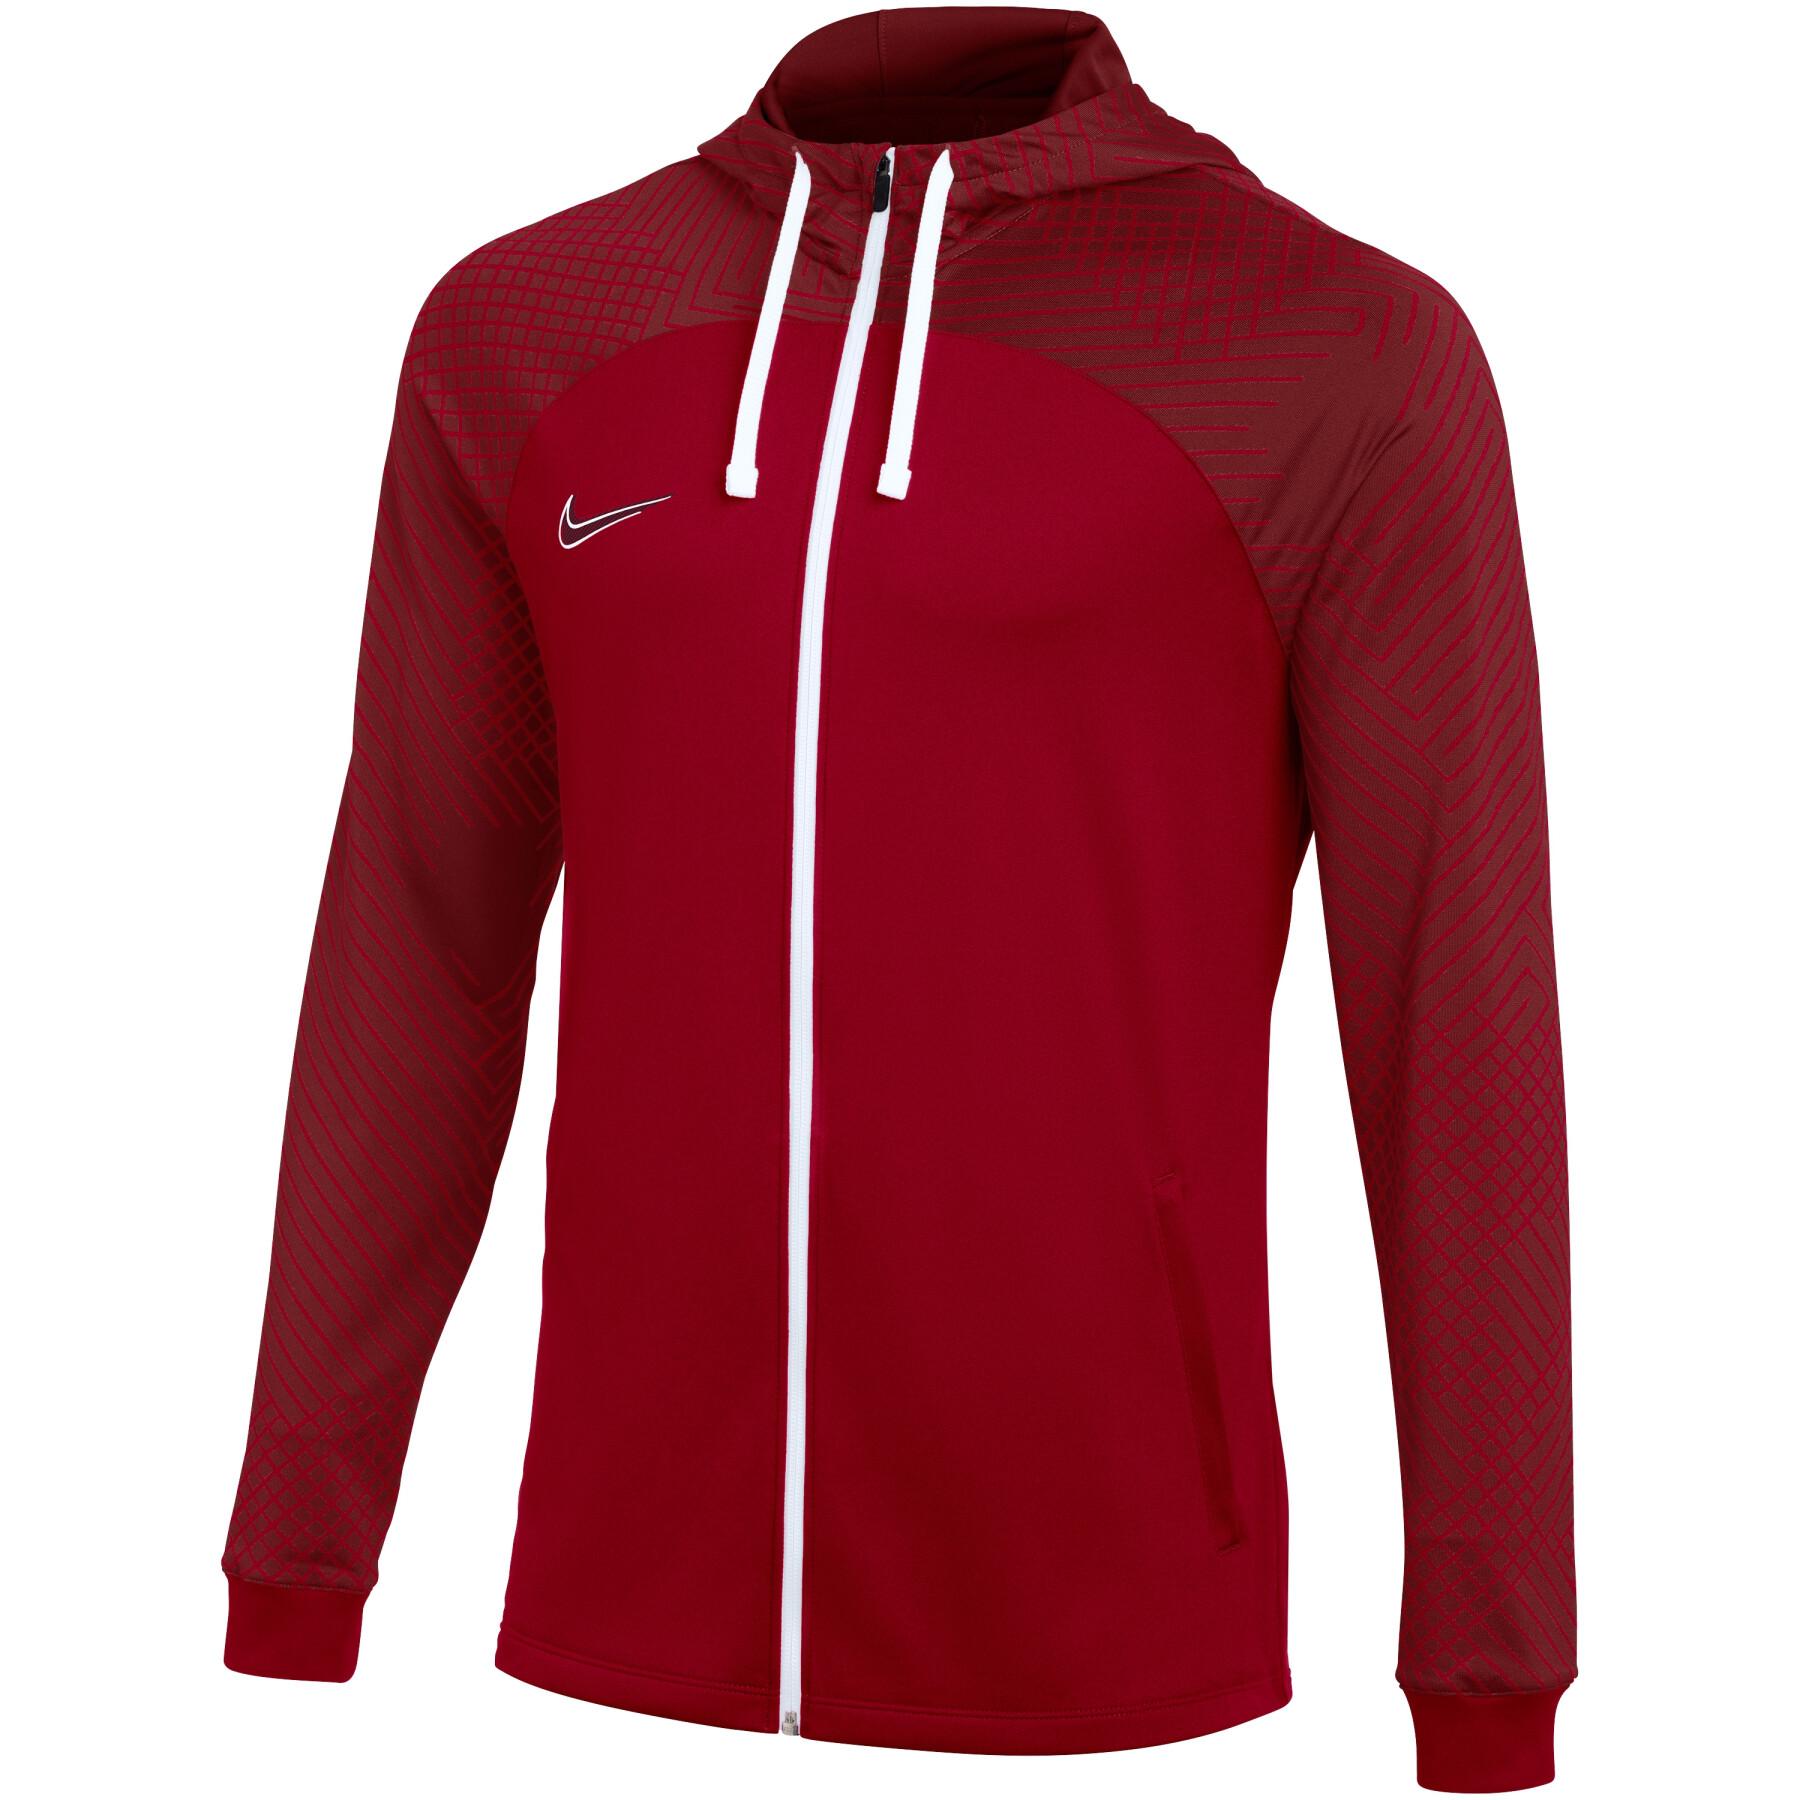 Sweat jacket Nike Dri-FIT Strike